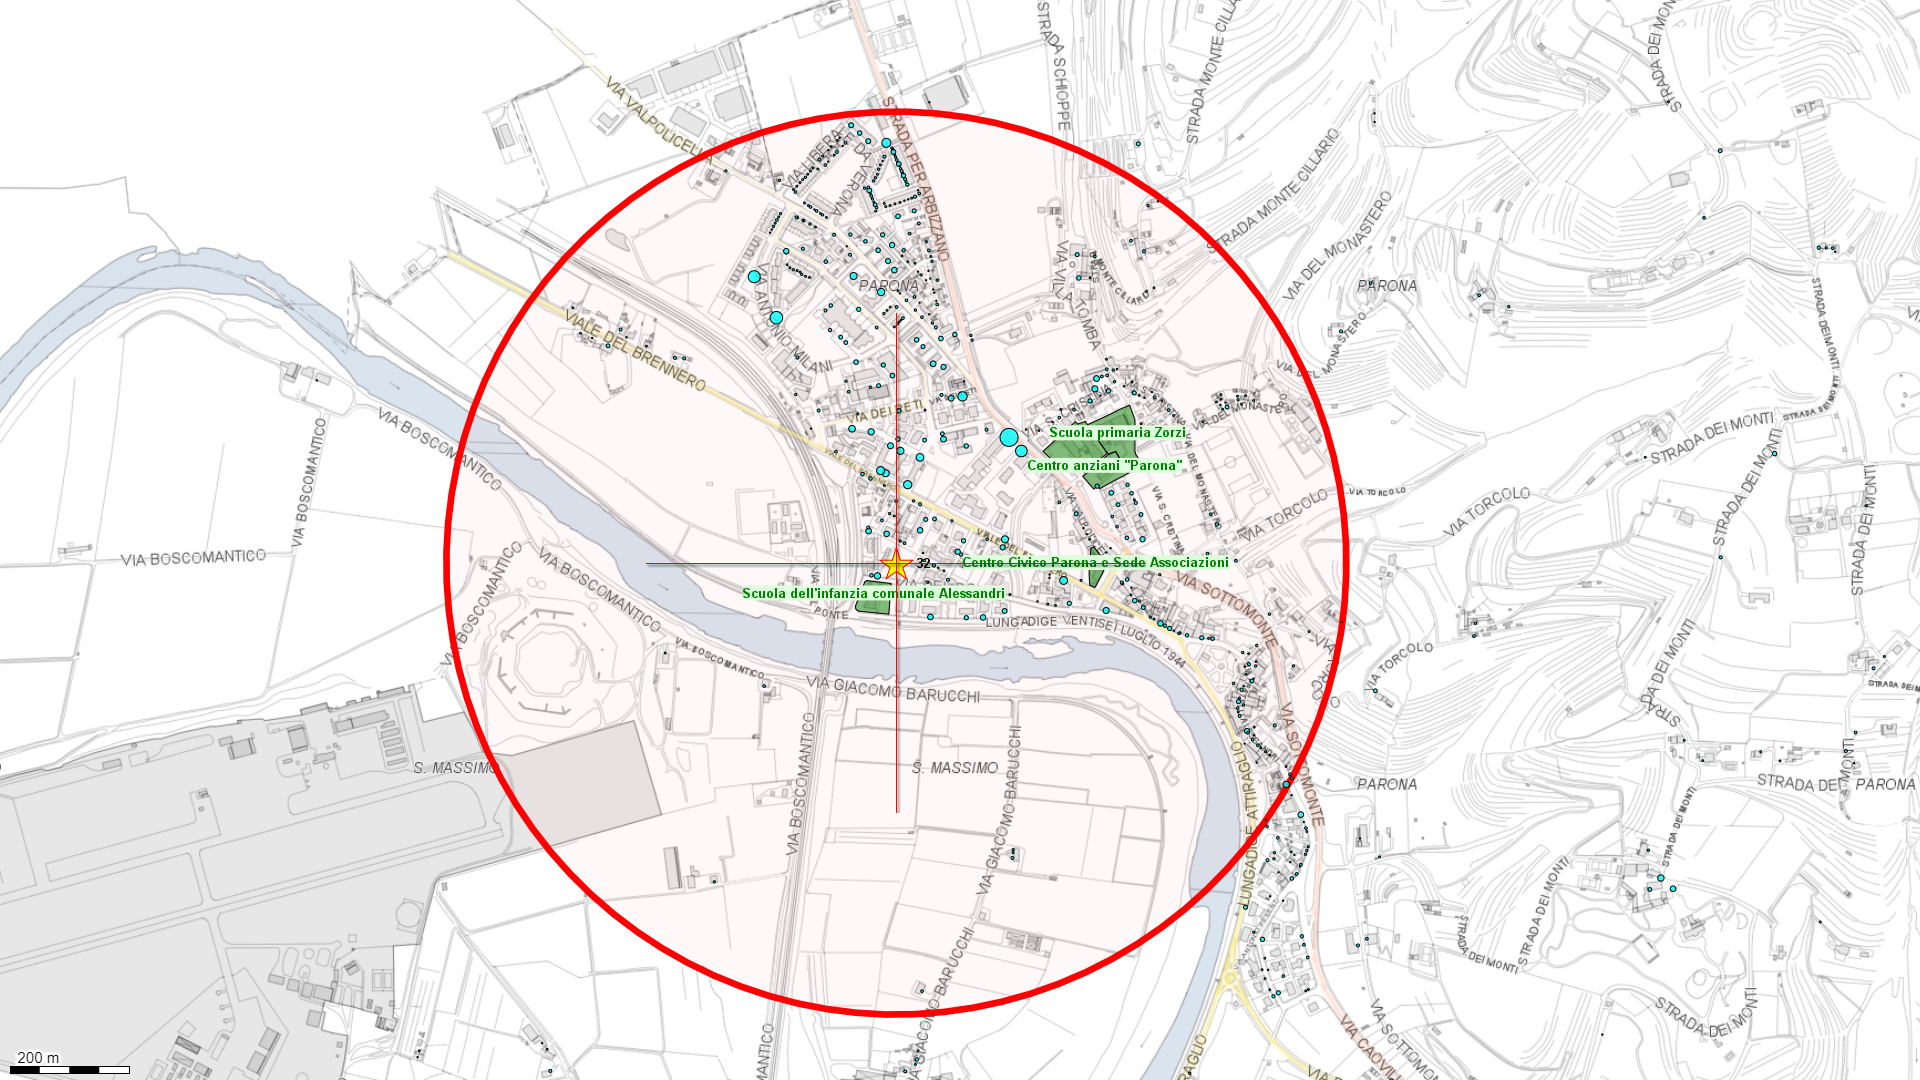 Mappa zona rossa - area interessata dall'evacuazione